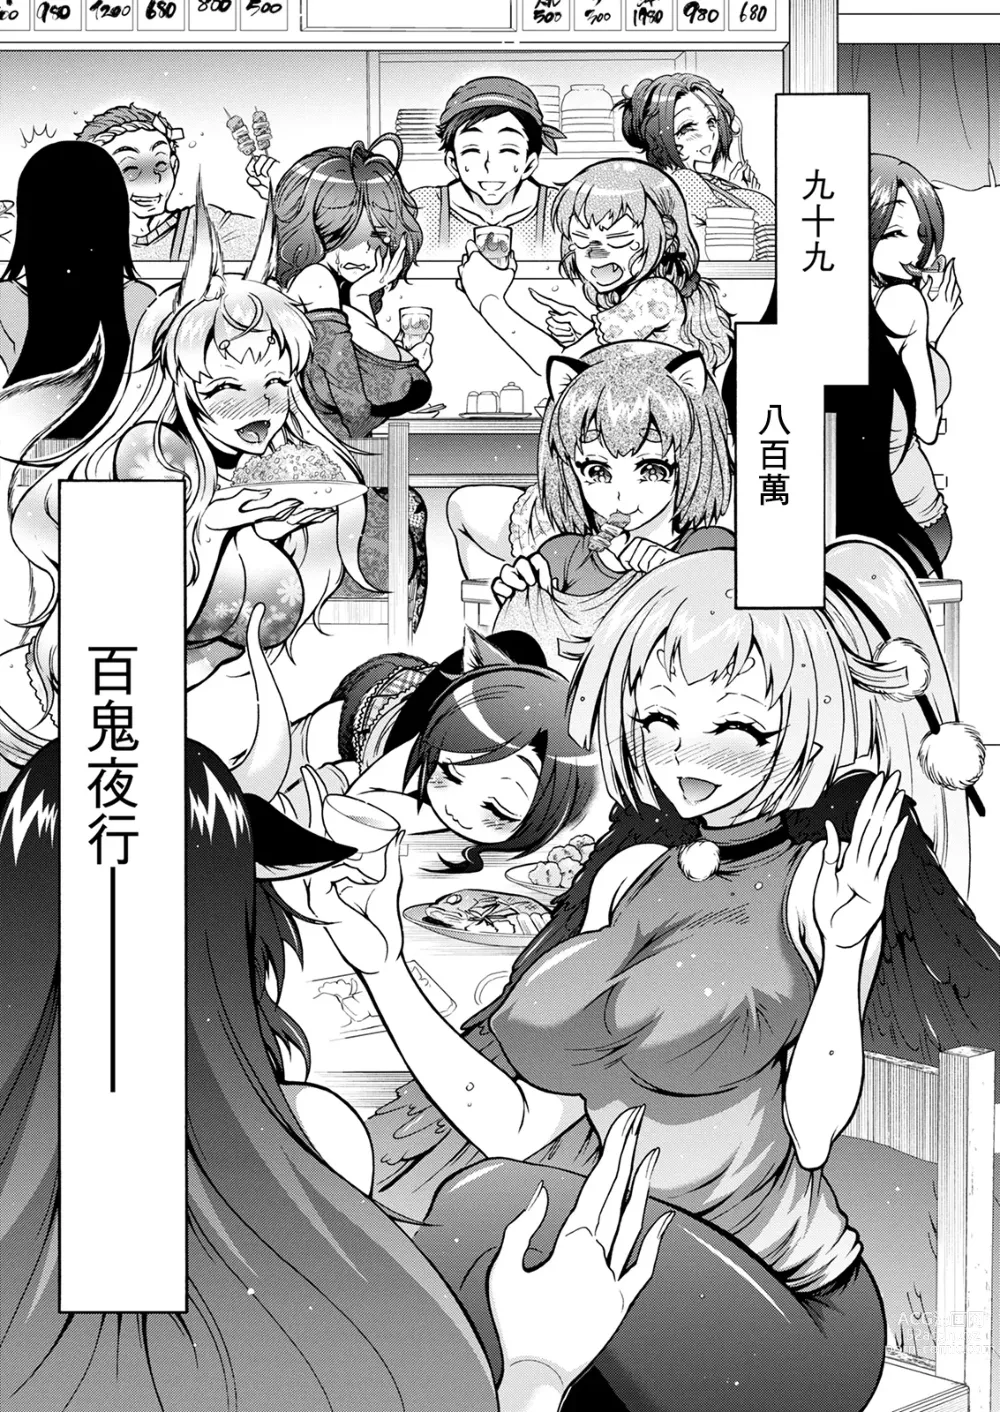 Page 18 of manga Youkai Ecchicchi Saishuuwa